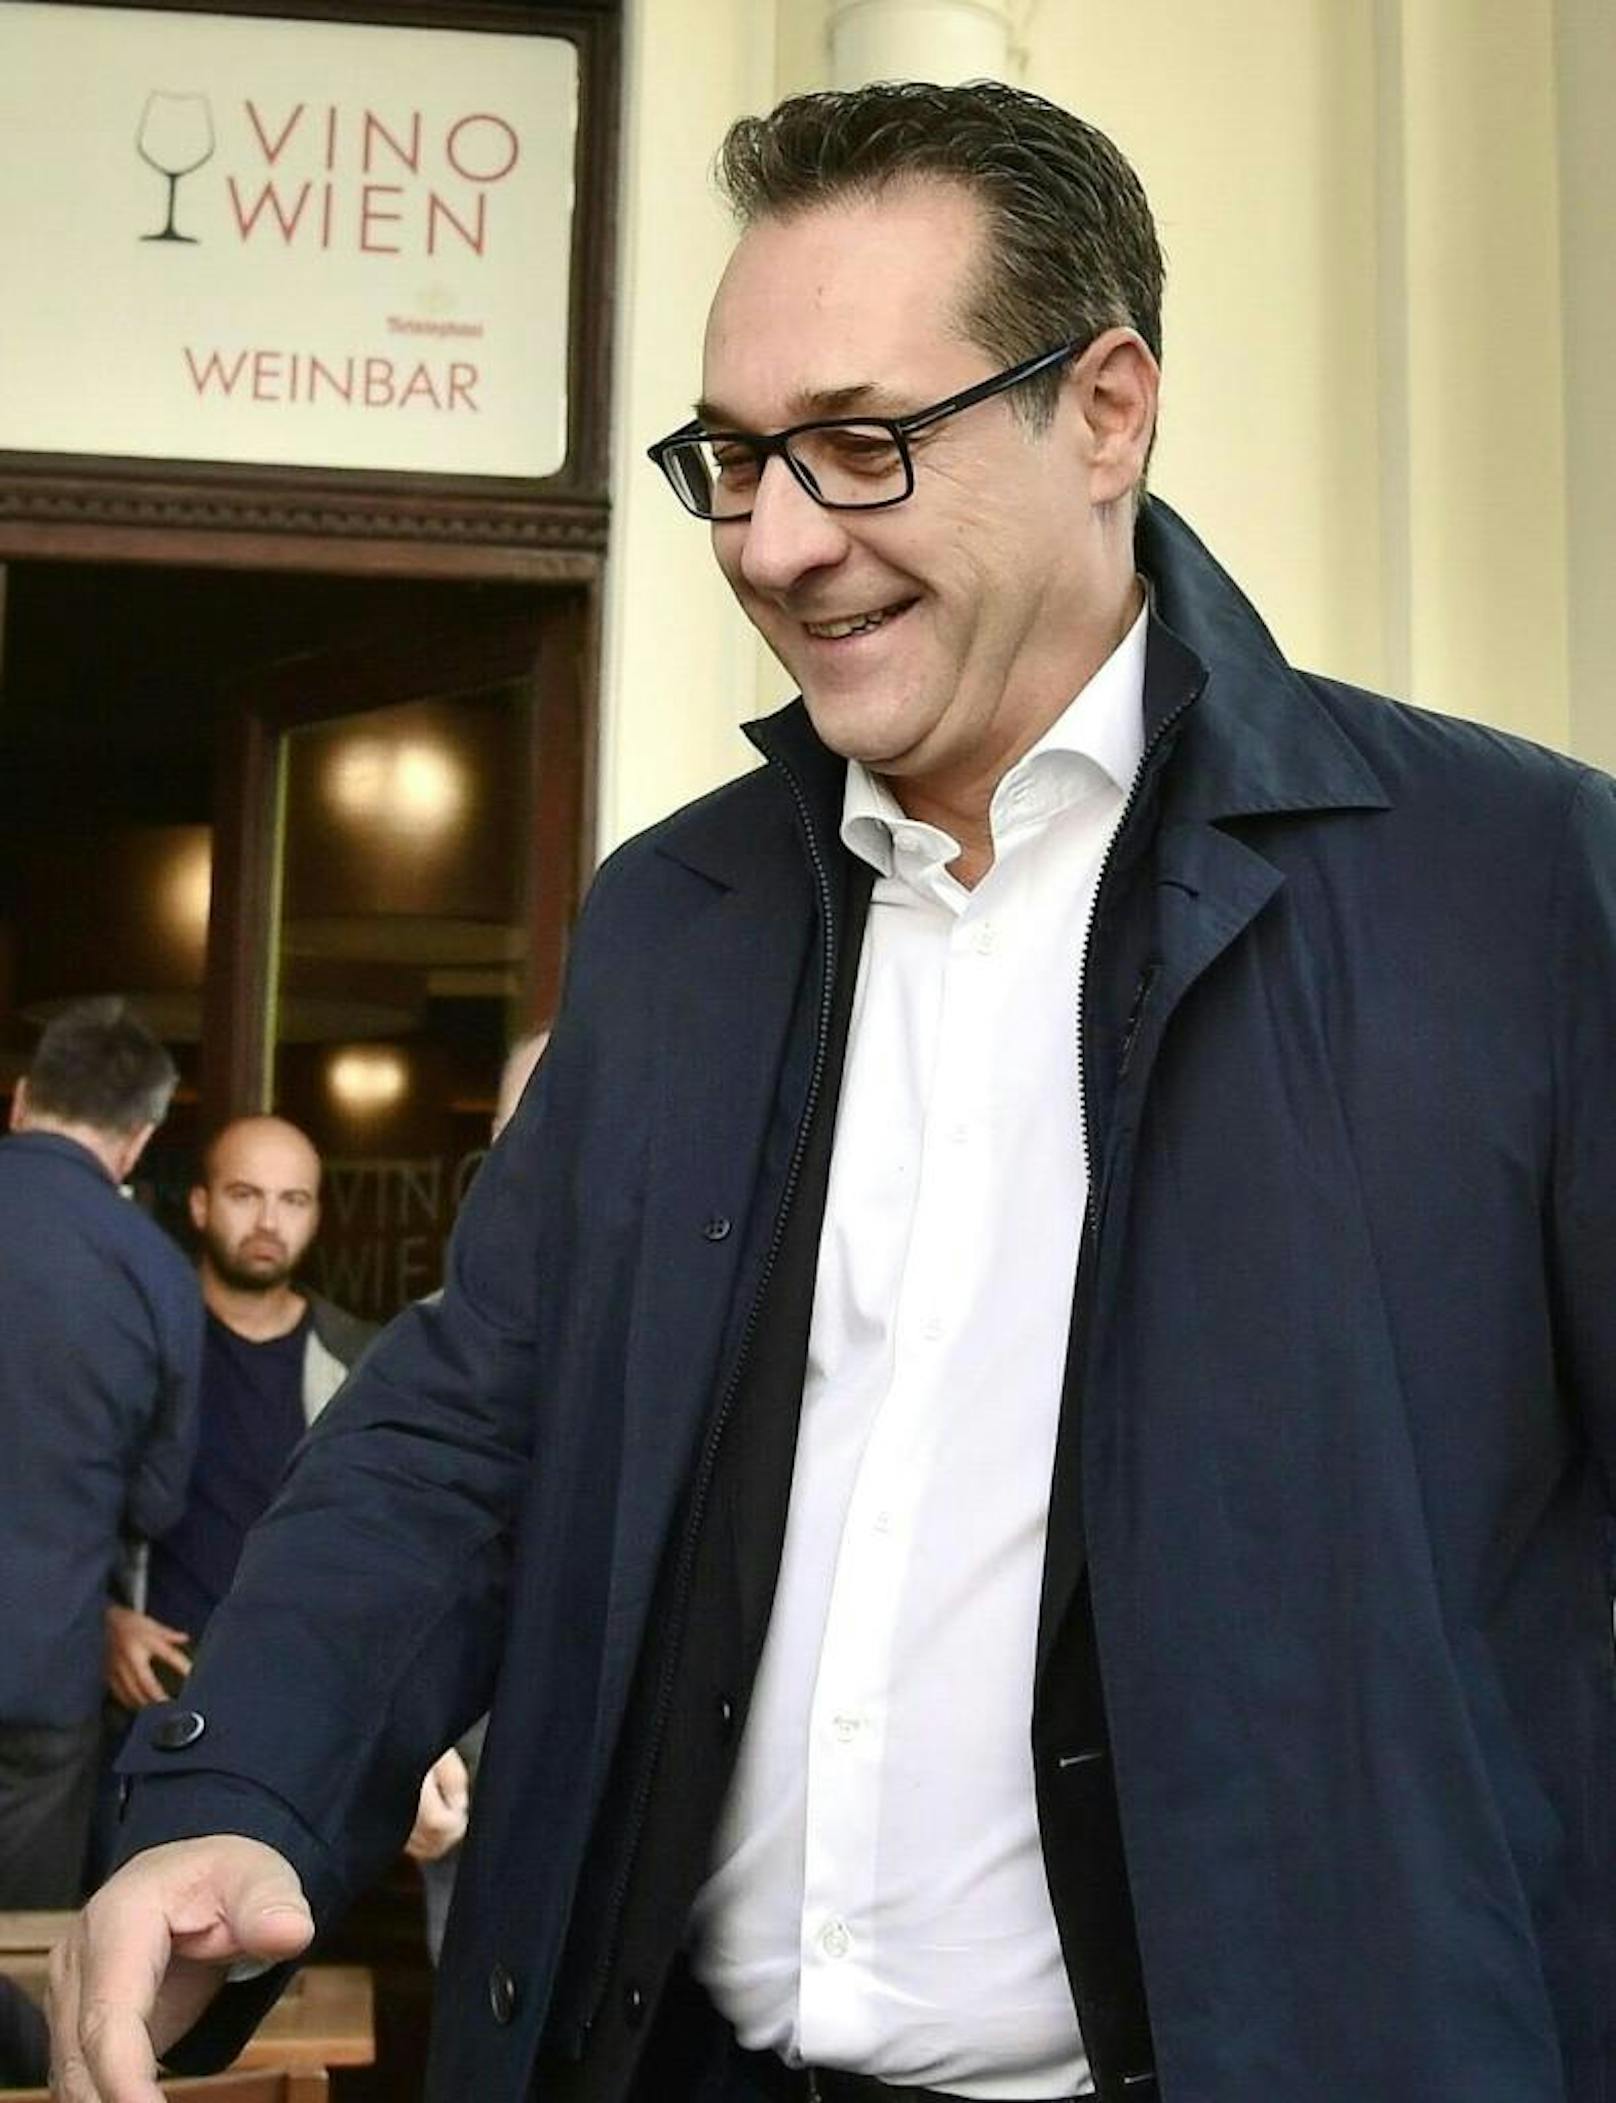 Der gefallene FPÖ-Chef traf kurz vor 10 Uhr am Dienstag, 1. Oktober 2019, in der "Vino Weinbar" in der Lichtenfelsgasse ein.